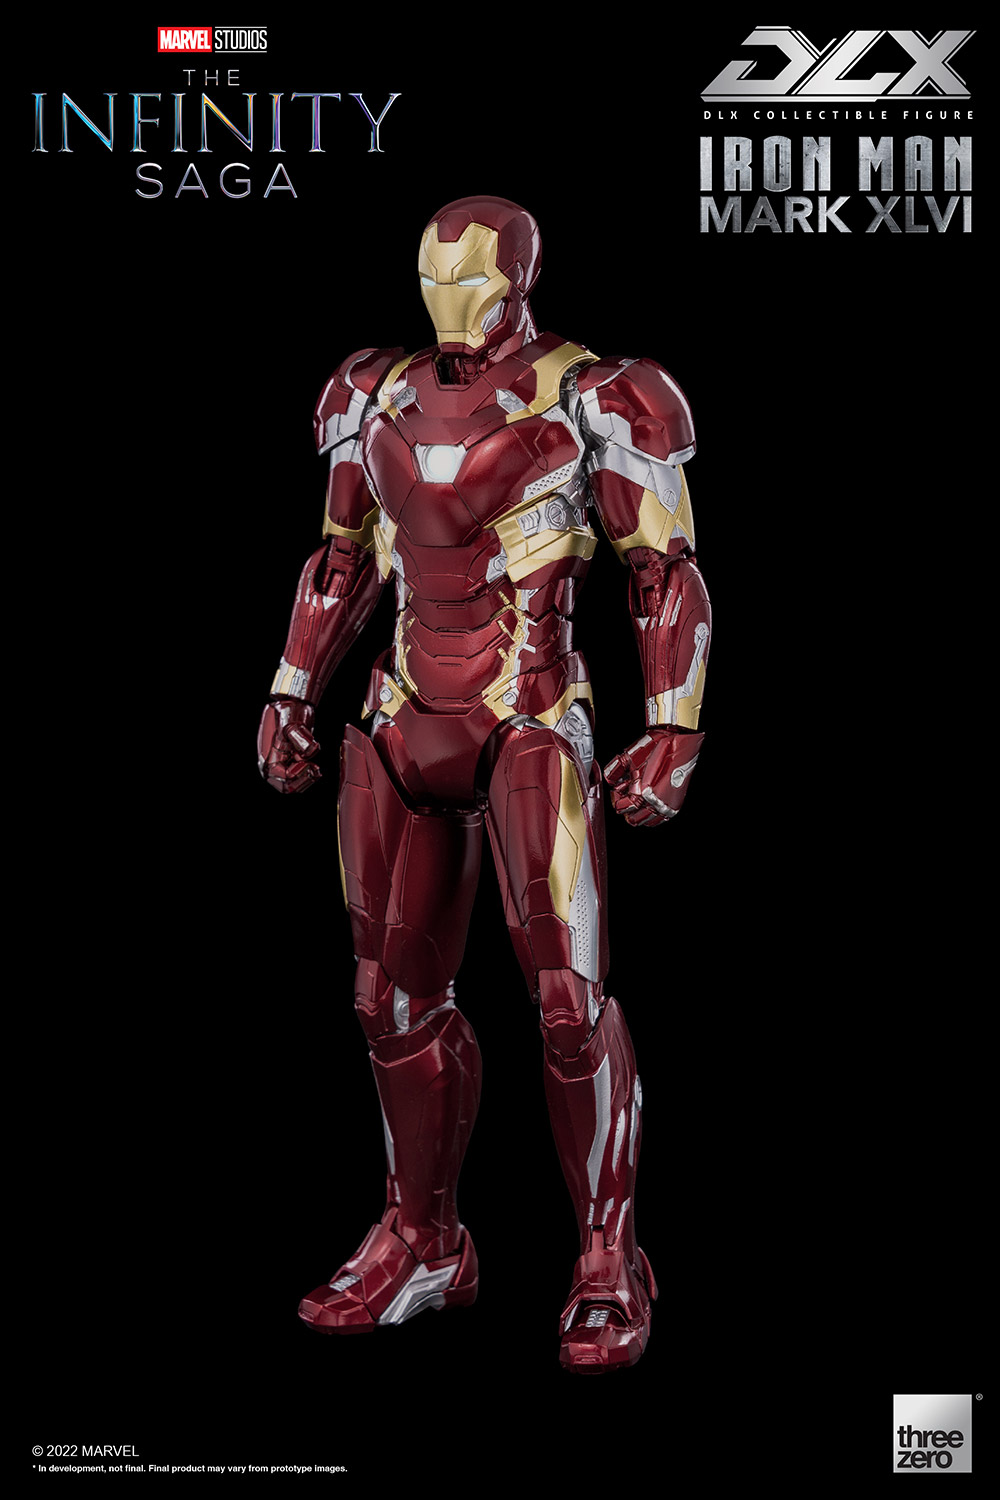 DLX Iron Man Mark 46(DLX アイアンマン・マーク46) Marvel Studios' The Infinity Saga(マーベル・スタジオ『インフィニティ・サーガ』) 1/12 完成品 可動フィギュア threezero(スリーゼロ)